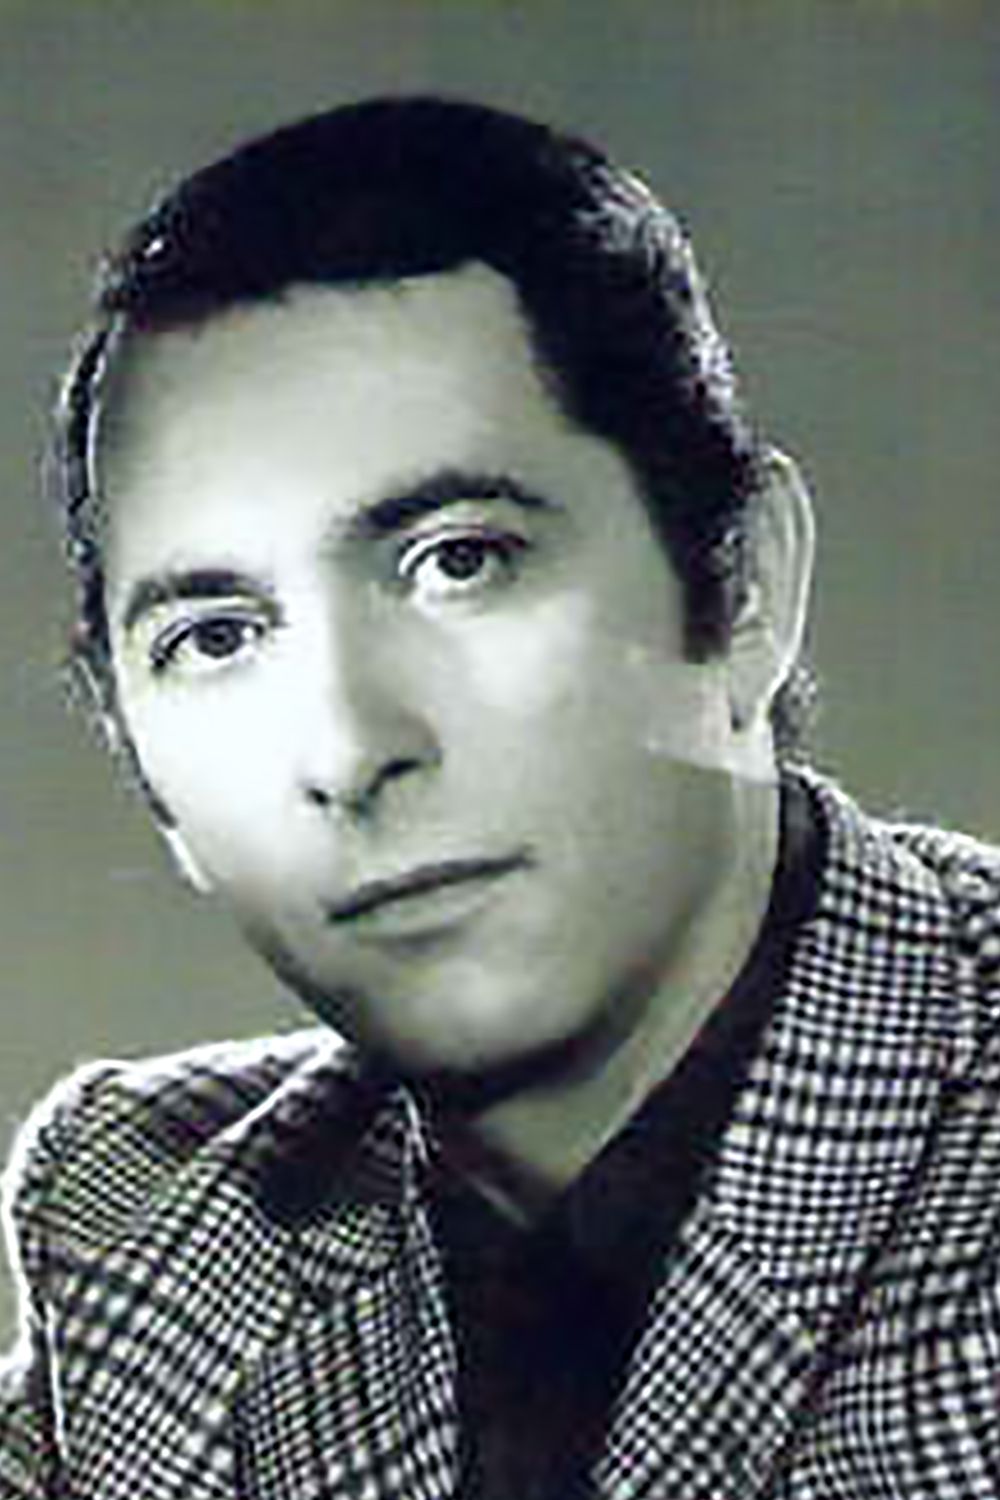 Rodolfo Lesica, Argentine Tango singer.